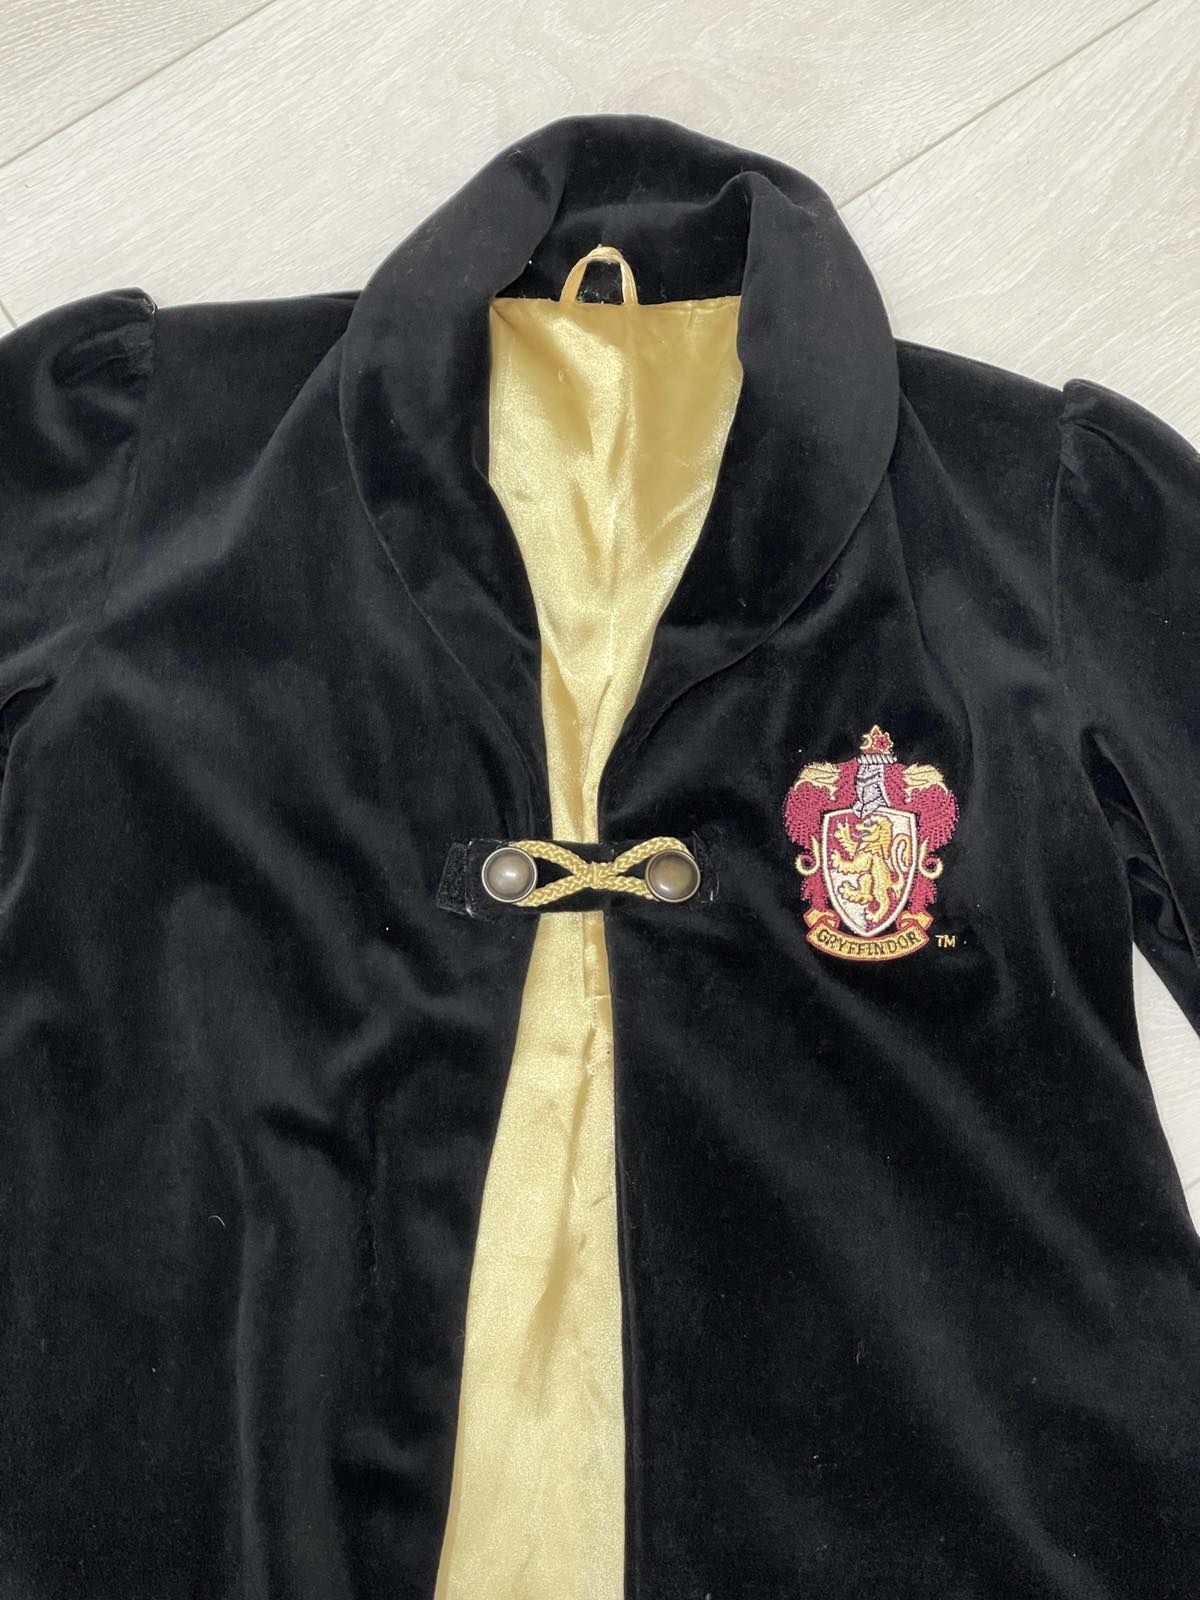 Гарри Потер:Пальто учителя, мантия Минерва МагГонагал и юбка  Гермиони